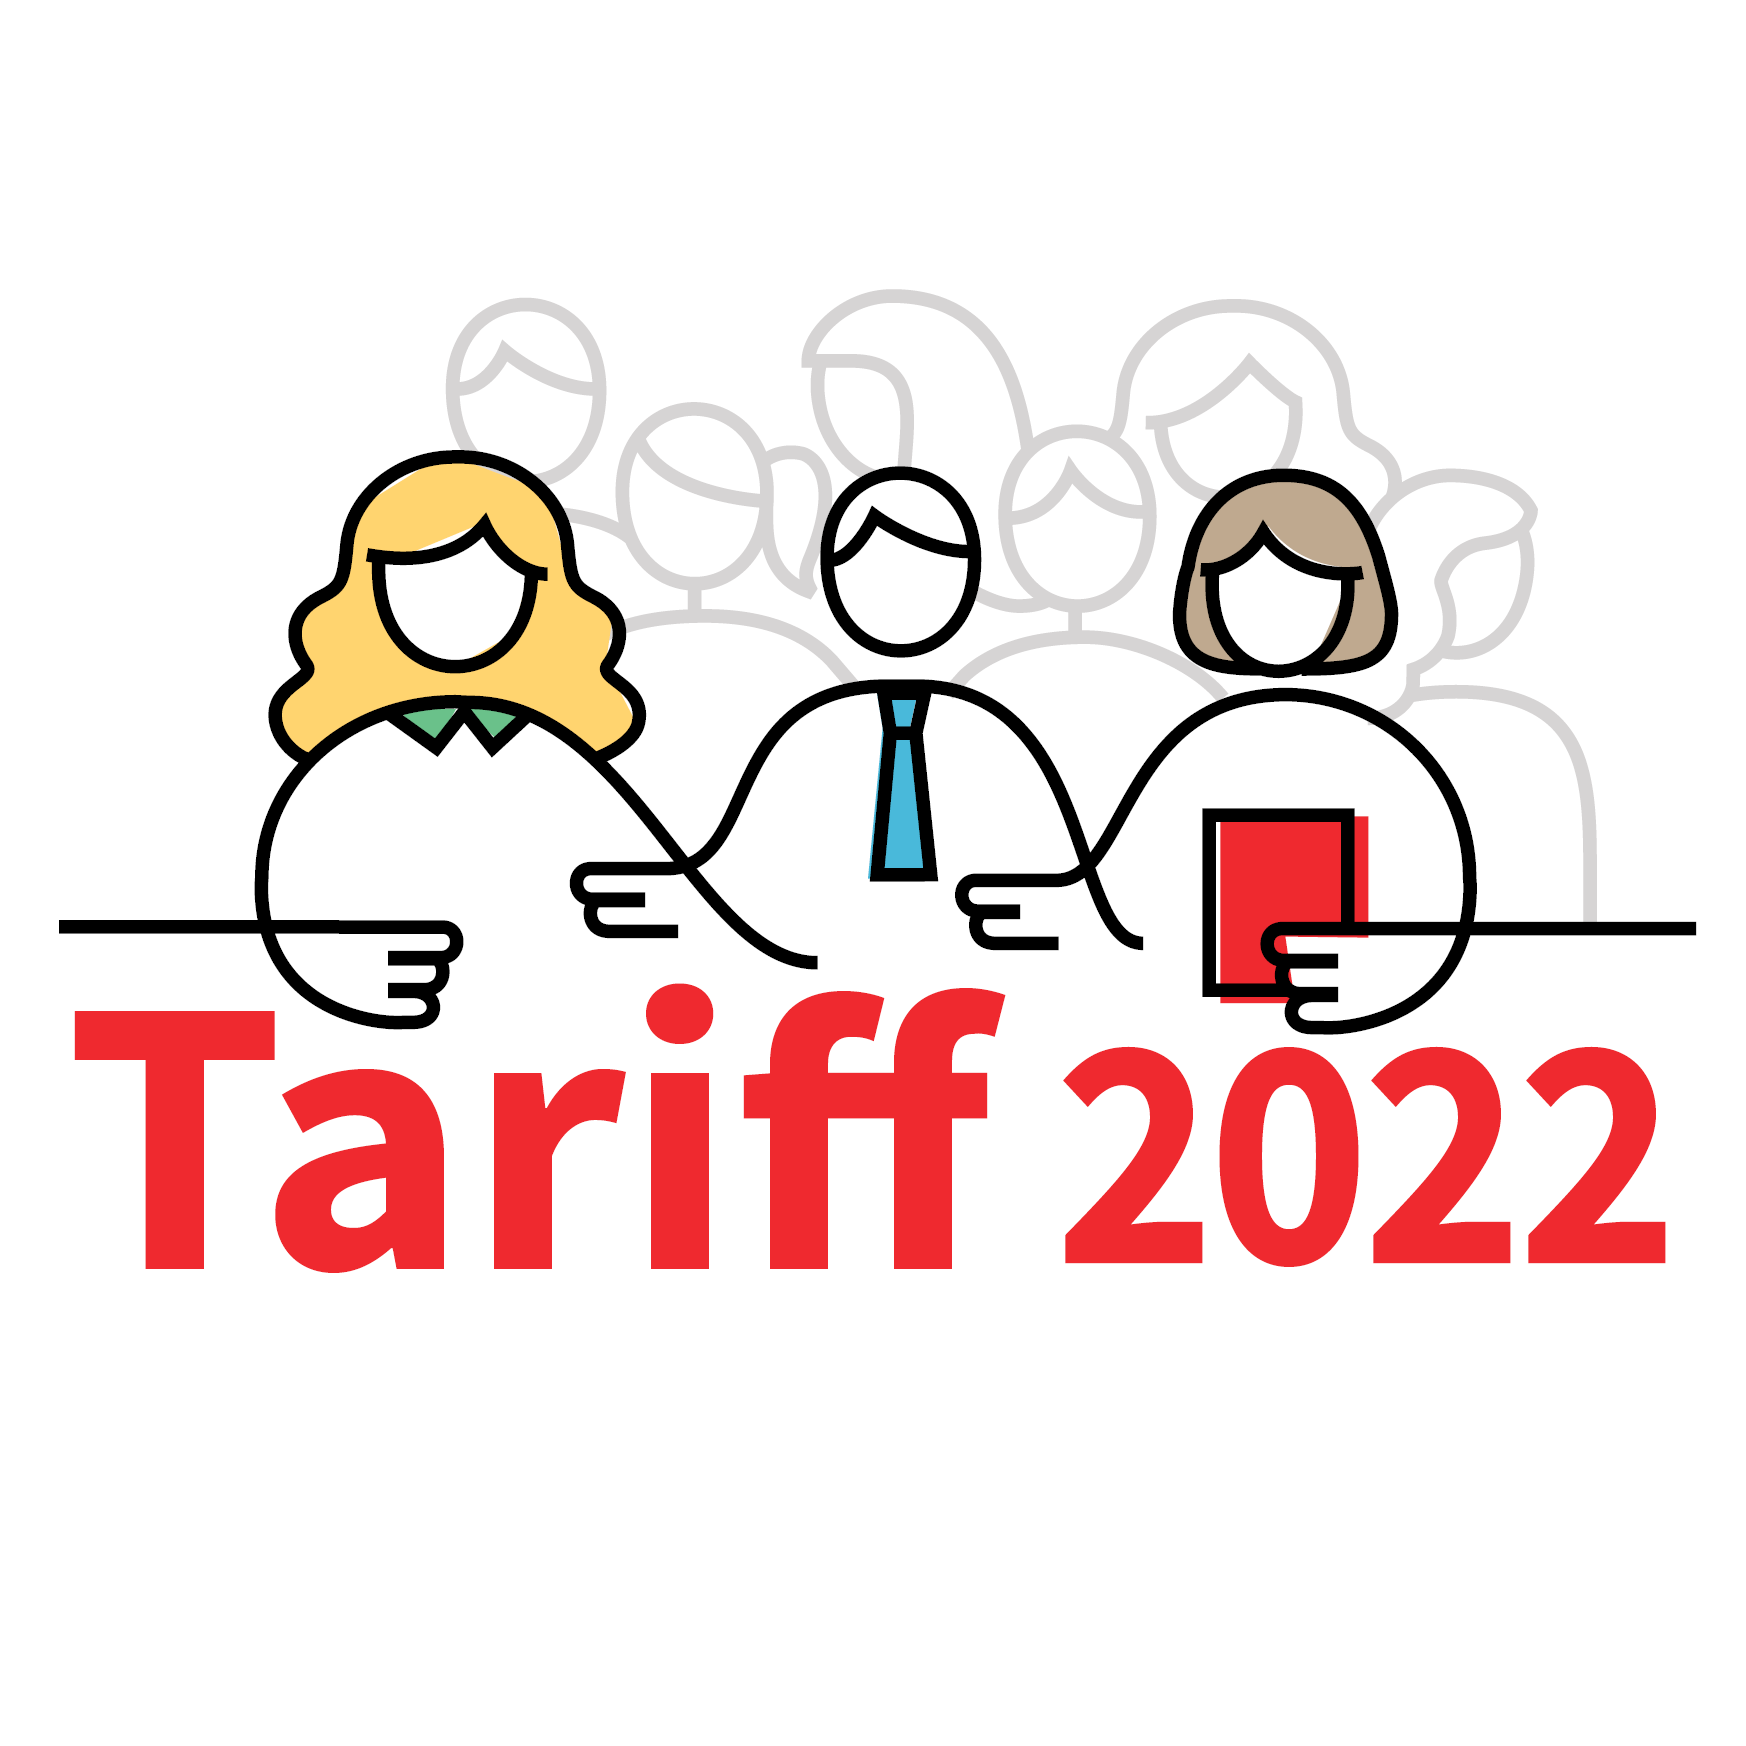 Tariff 2022